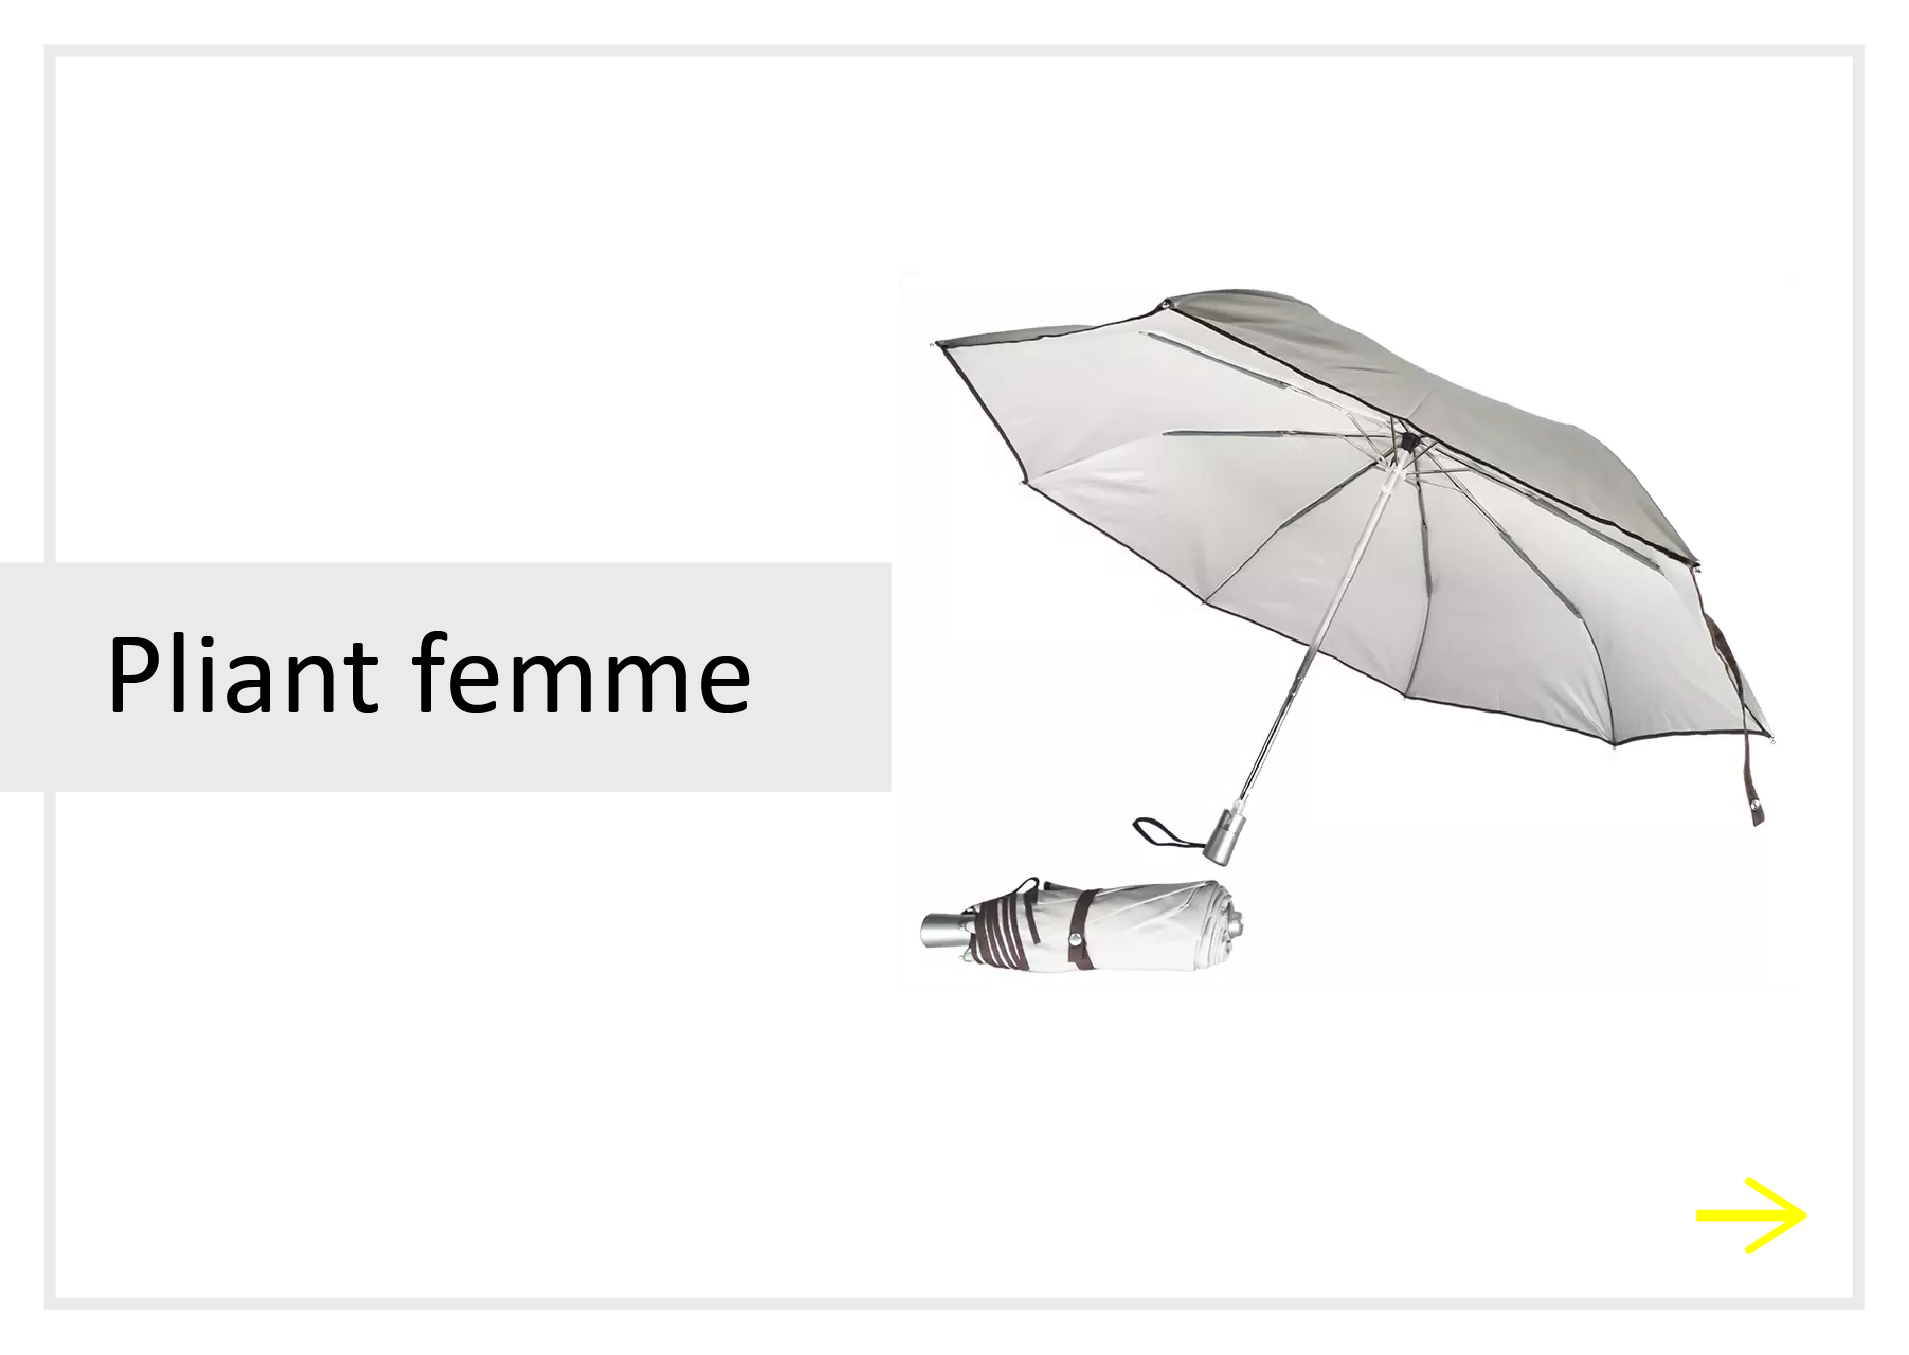 lien parapluies pliants femme